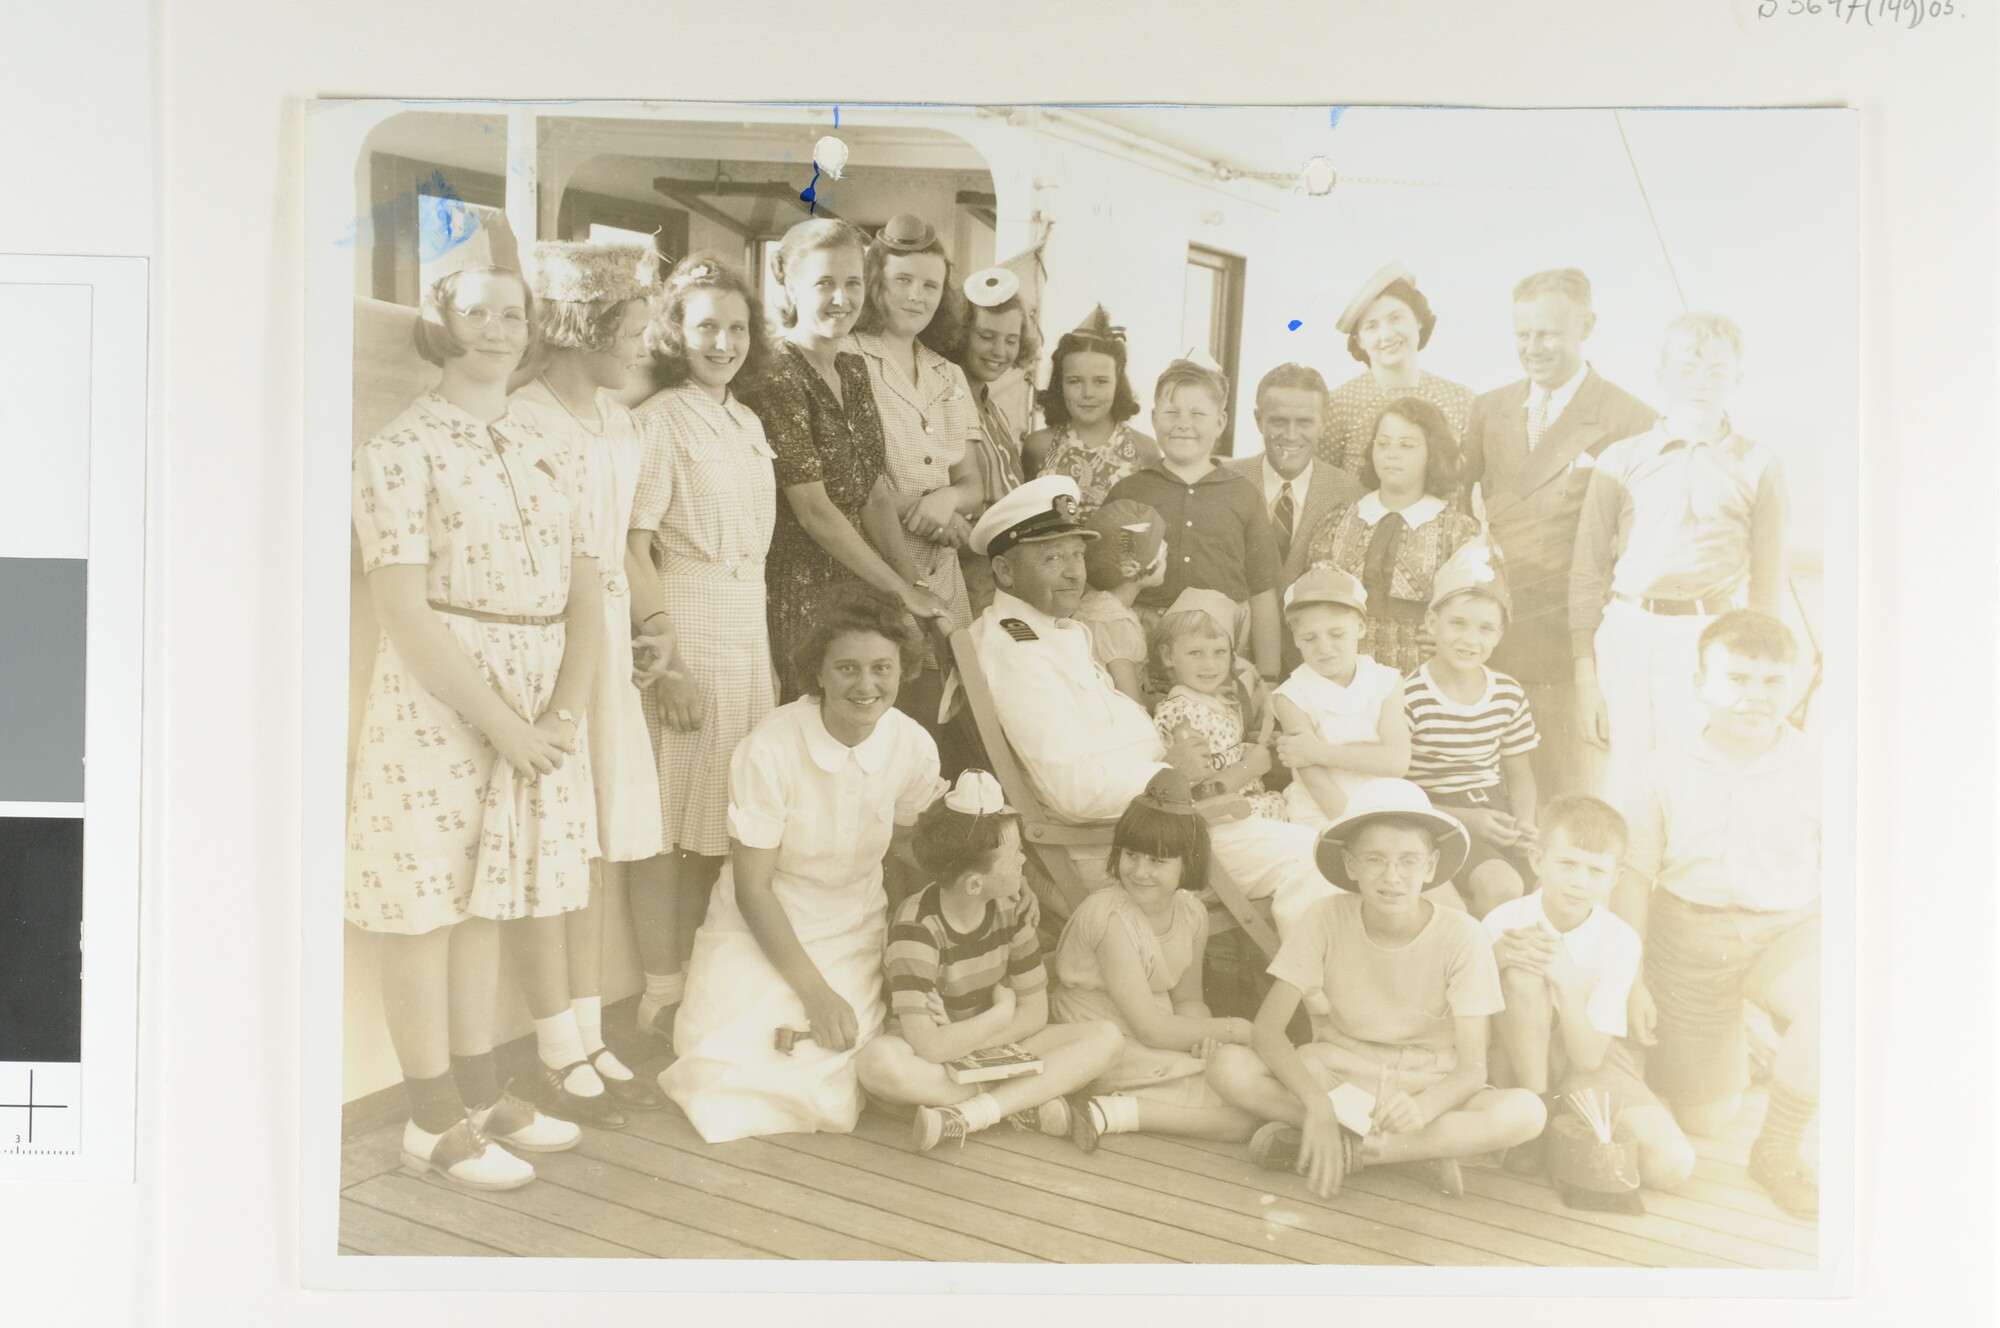 S.5647(149)05; Groepsfoto met kapitein G.J. Barendse tijdens een kinderpartij genomen aan boord van het ss. 'Statendam', omstreeks 1939; foto